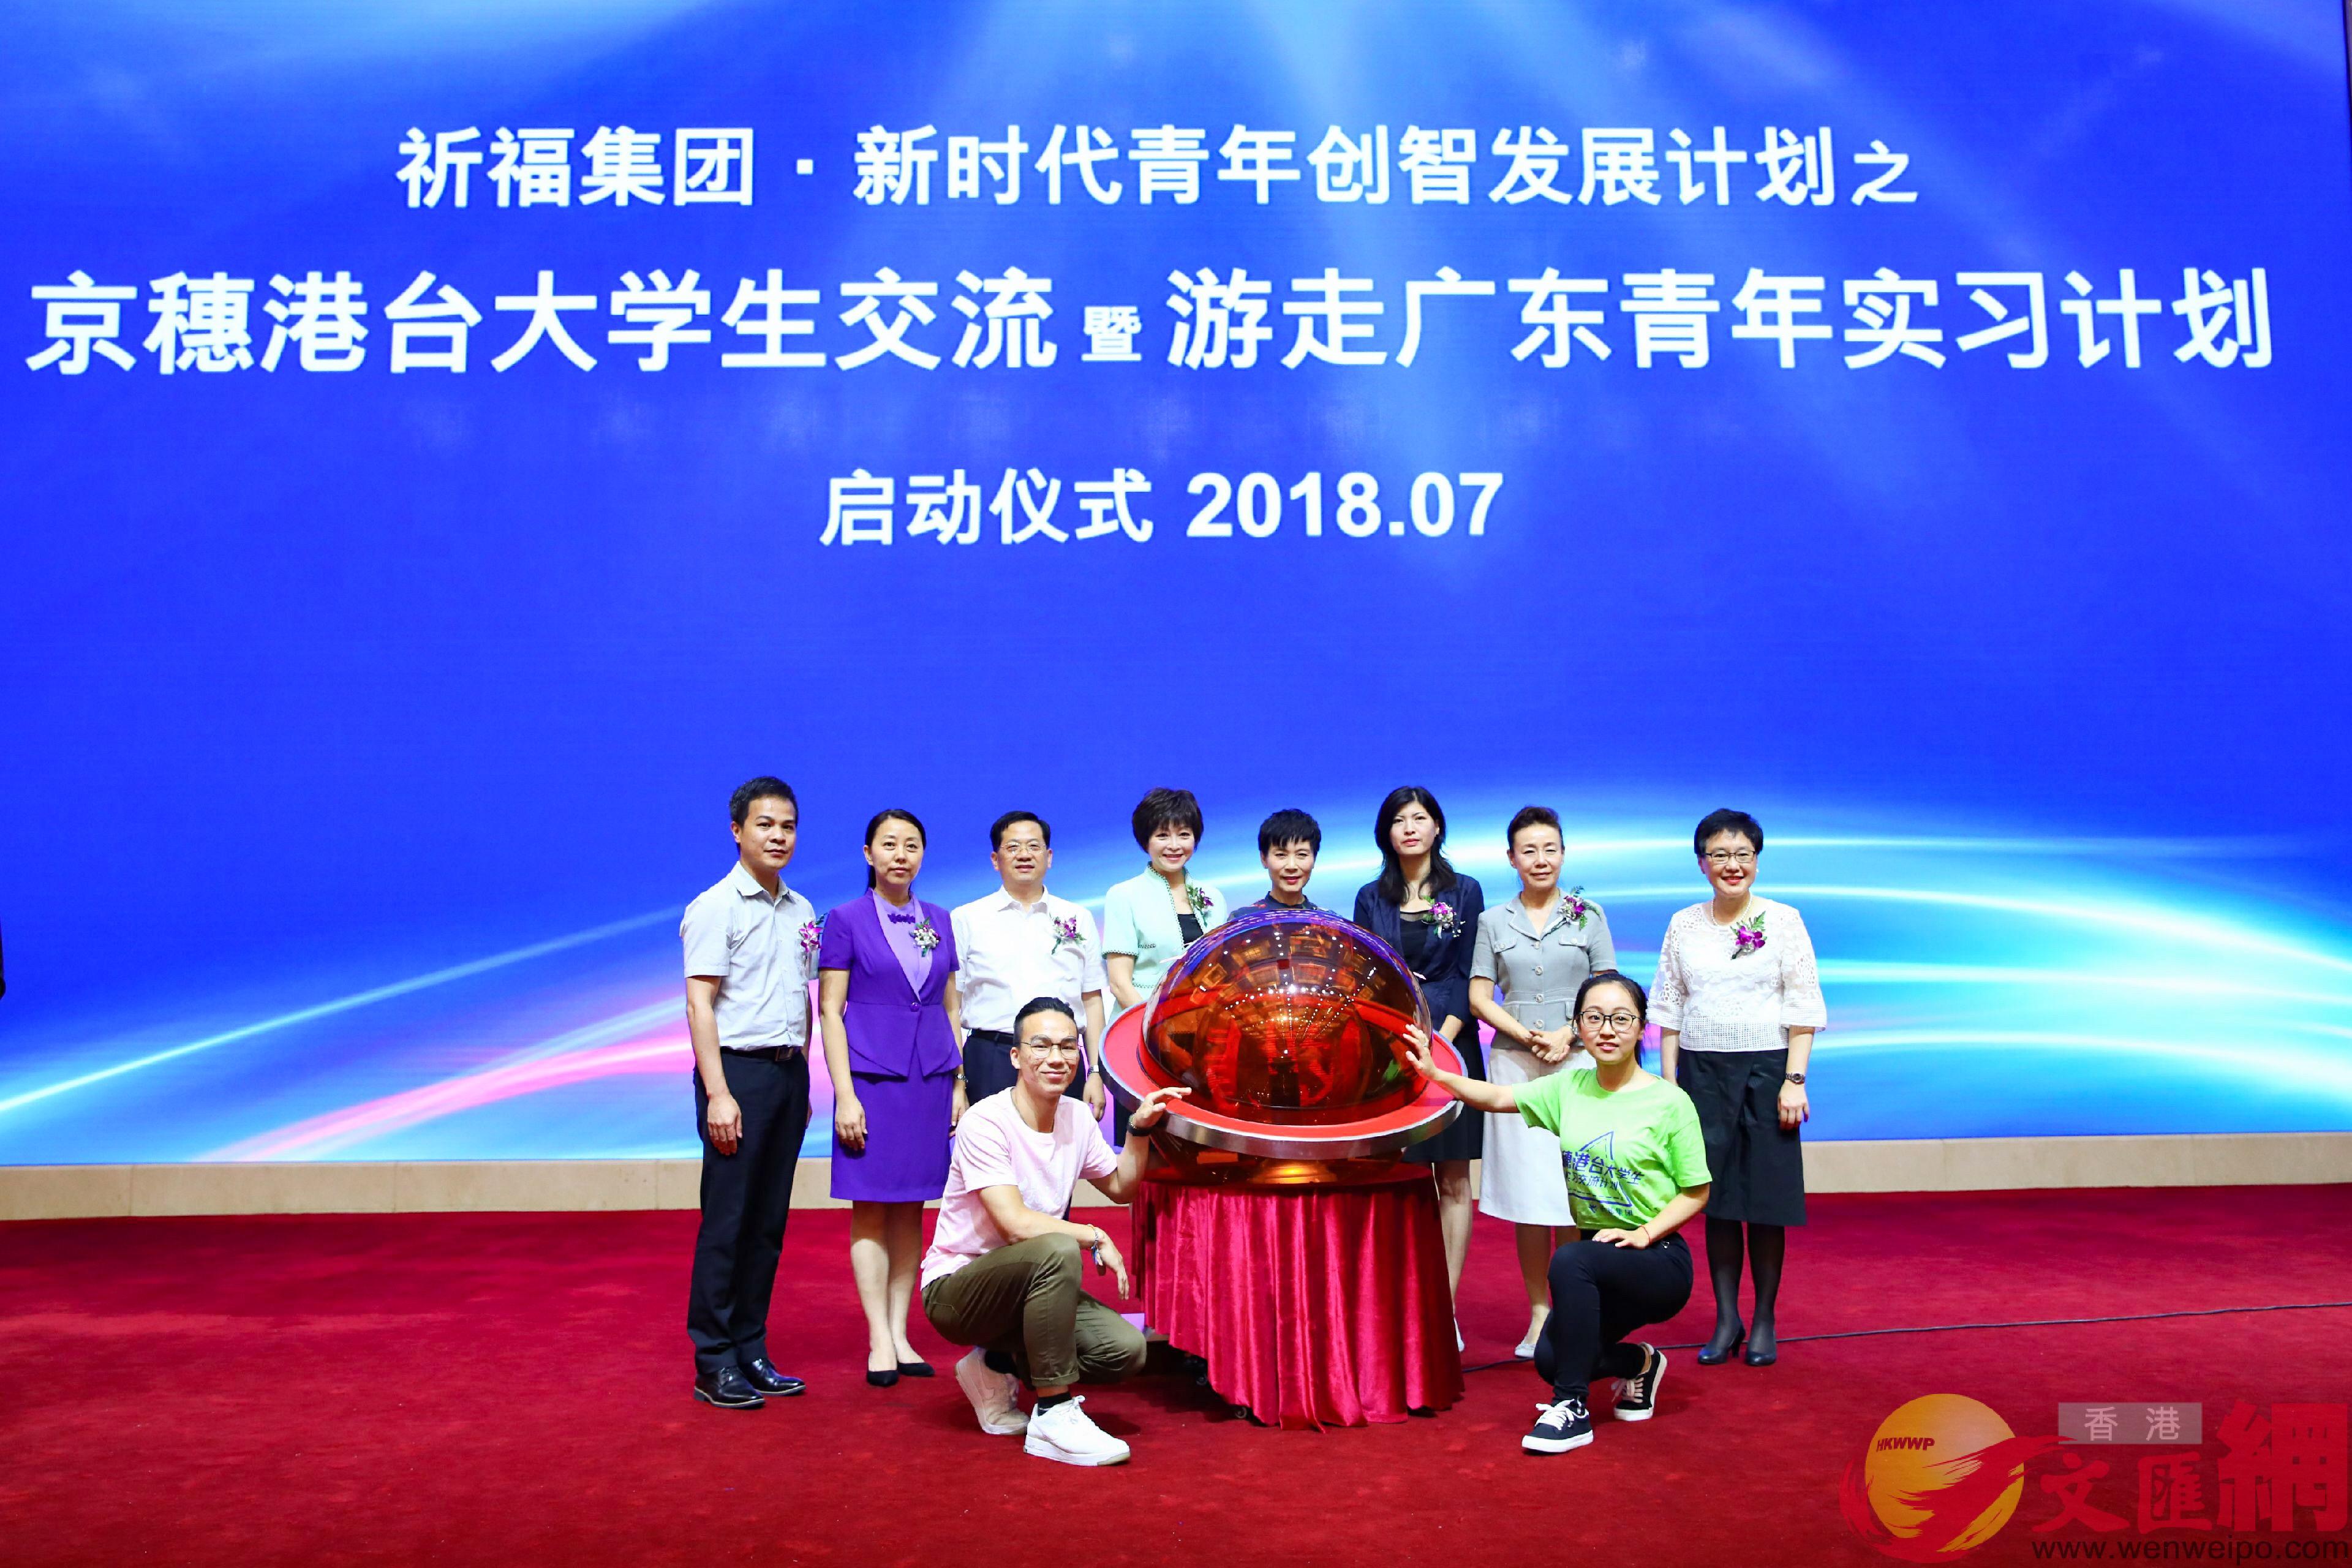 京港穗台四地111名大學生將在廣州開啟一個多月的實習生活C胡若璋攝